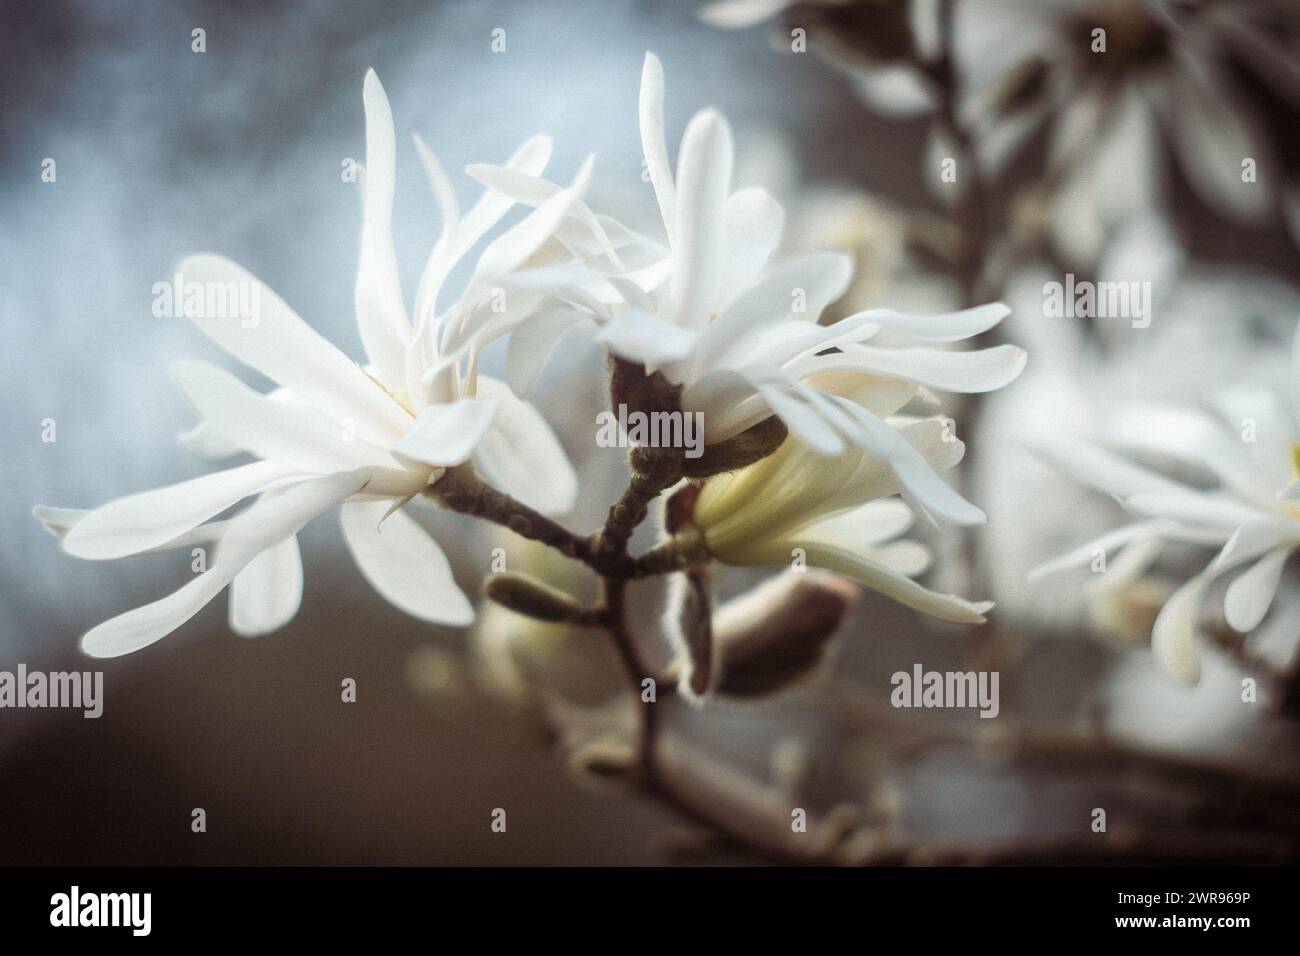 Close up of Star Magnolias (Magnolia stellata) against a defocused background Stock Photo